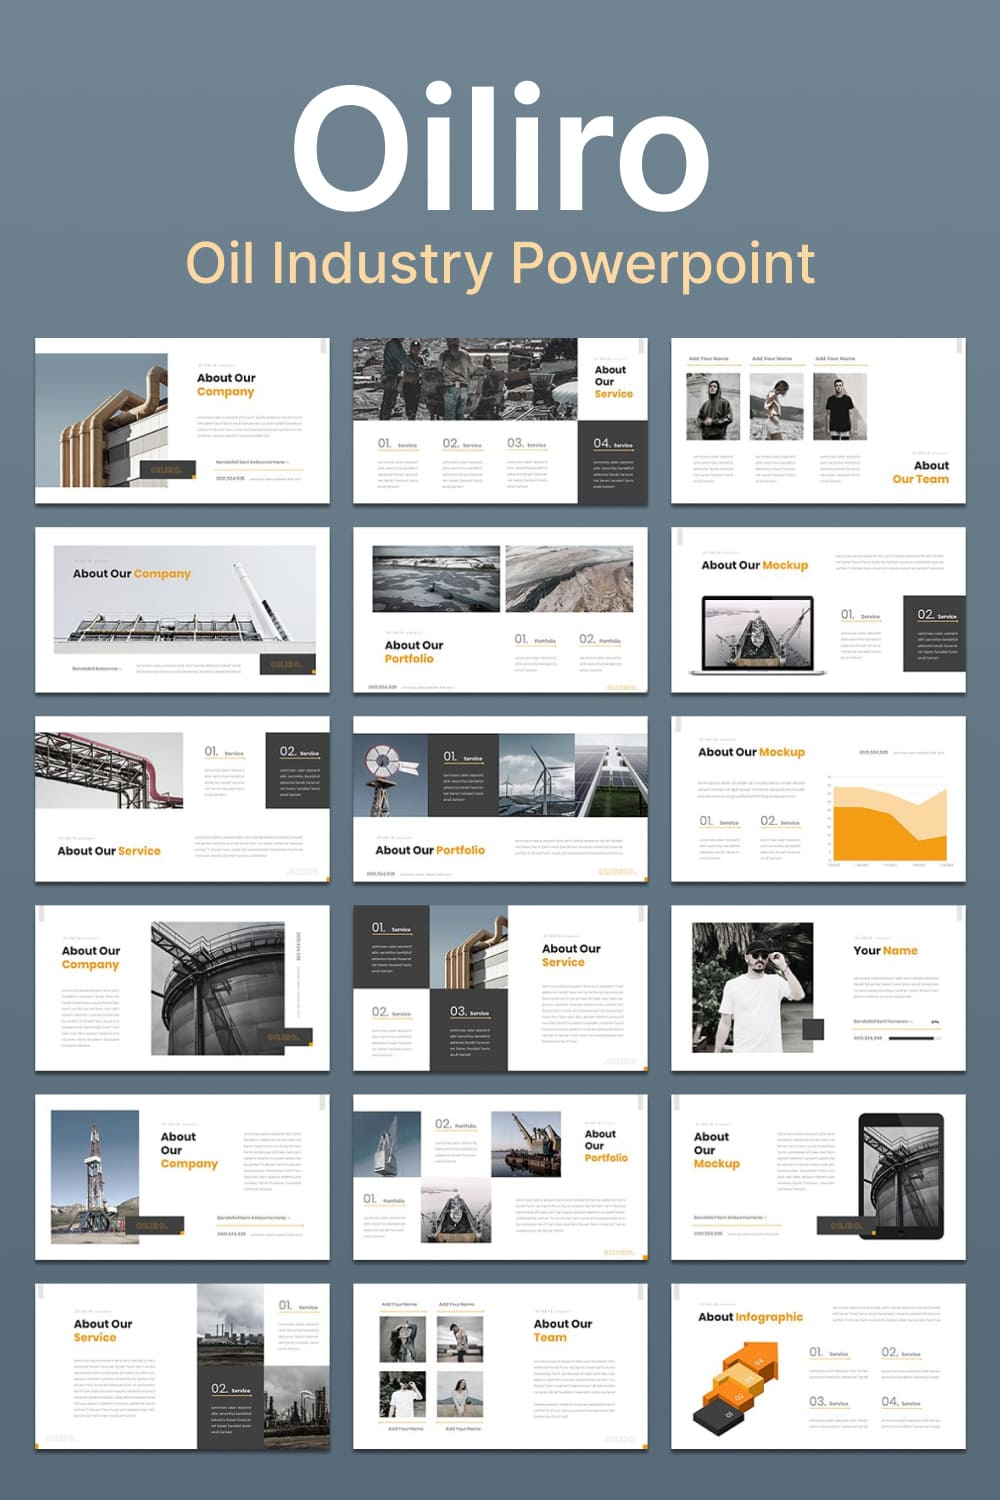 oiliro oil industry powerpoint 03